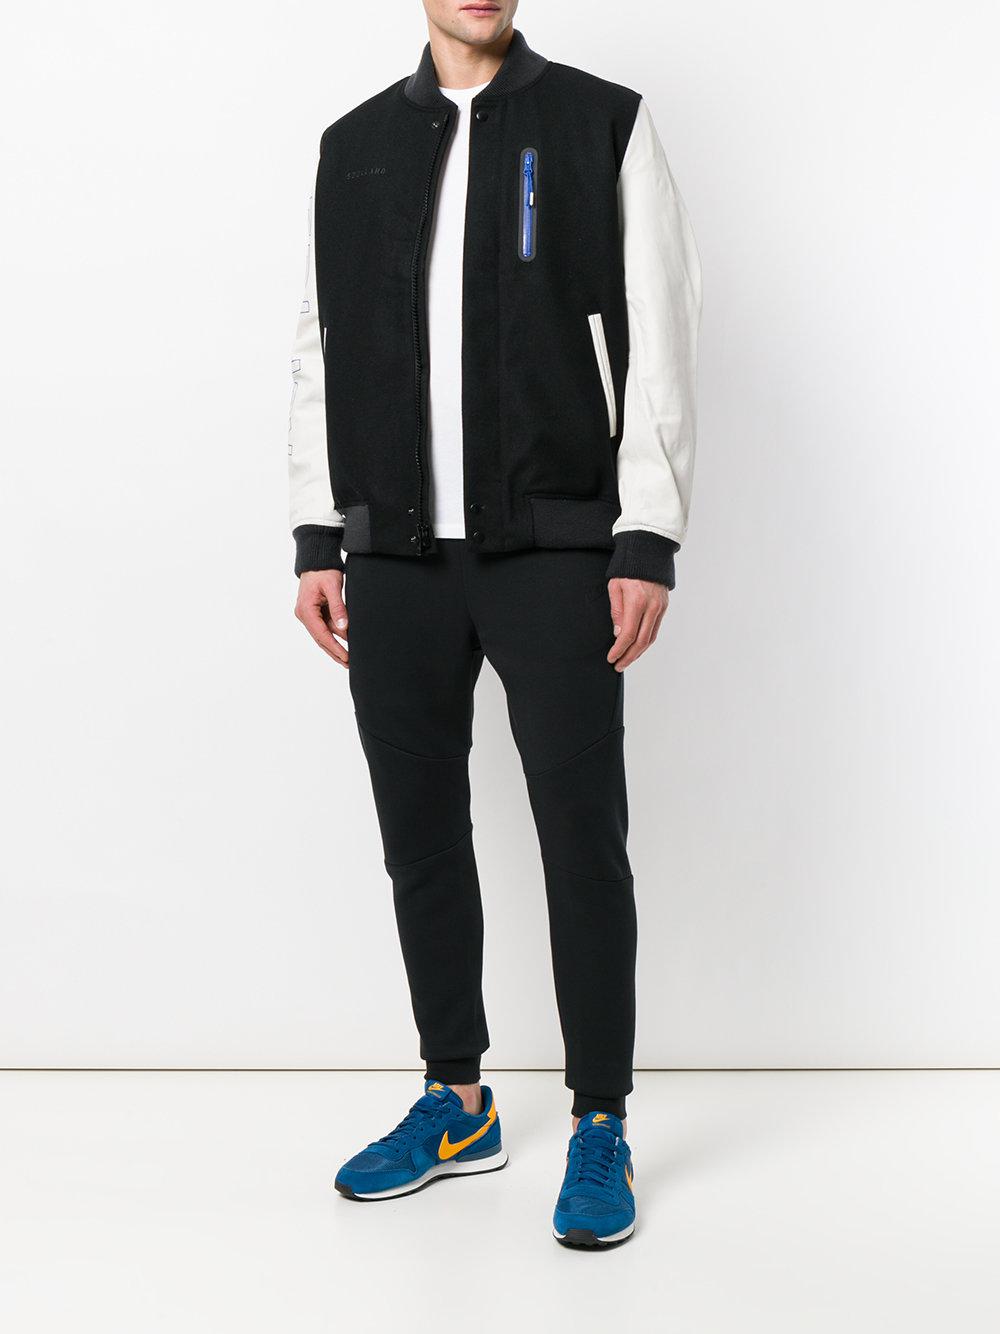 Nike Wool Soulland X Sb' Jacket in Black for Men - Lyst